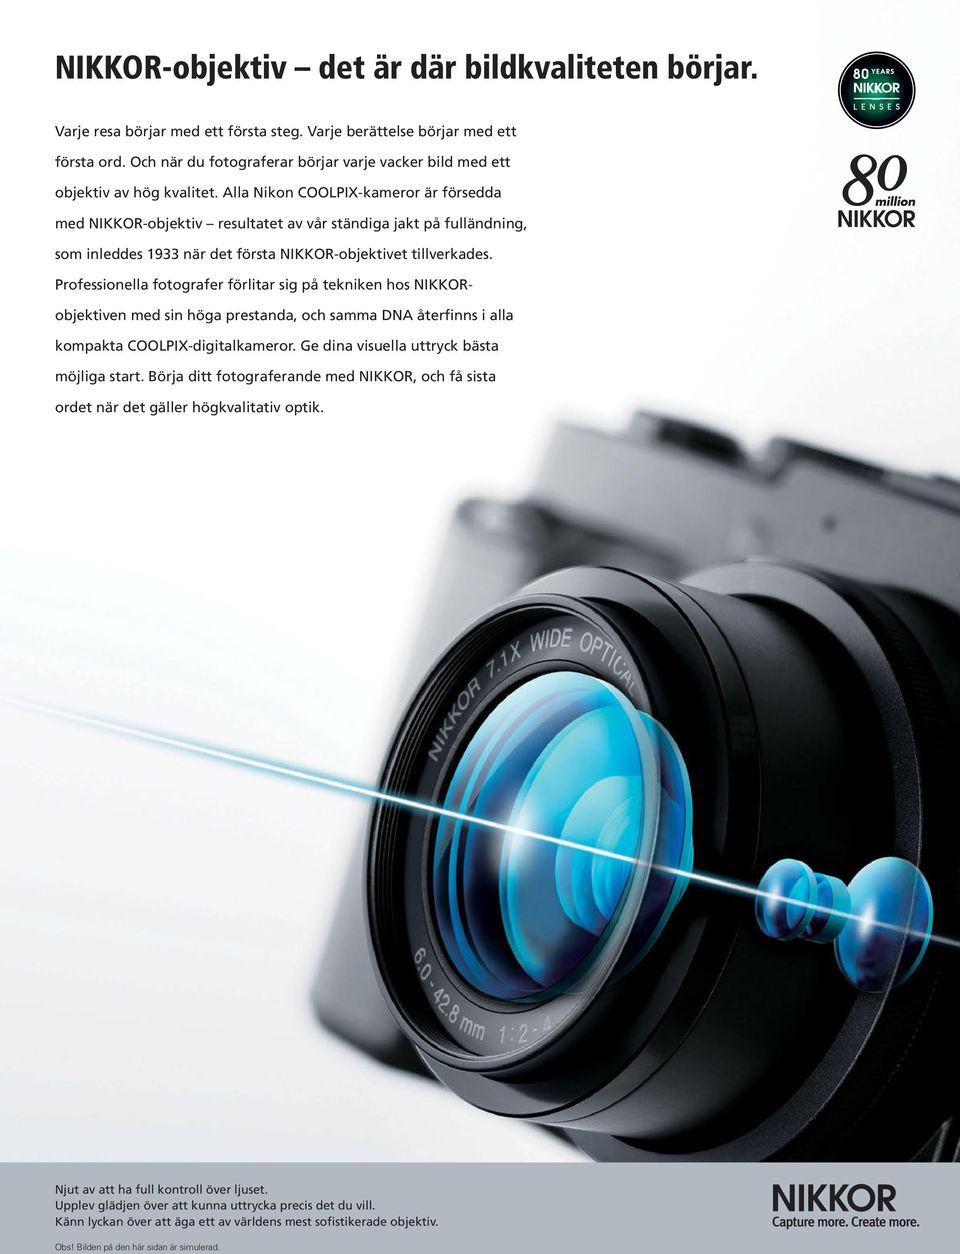 Alla Nikon COOLPIX-kameror är försedda med NIKKOR-objektiv resultatet av vår ständiga jakt på fulländning, som inleddes 1933 när det första NIKKOR-objektivet tillverkades.